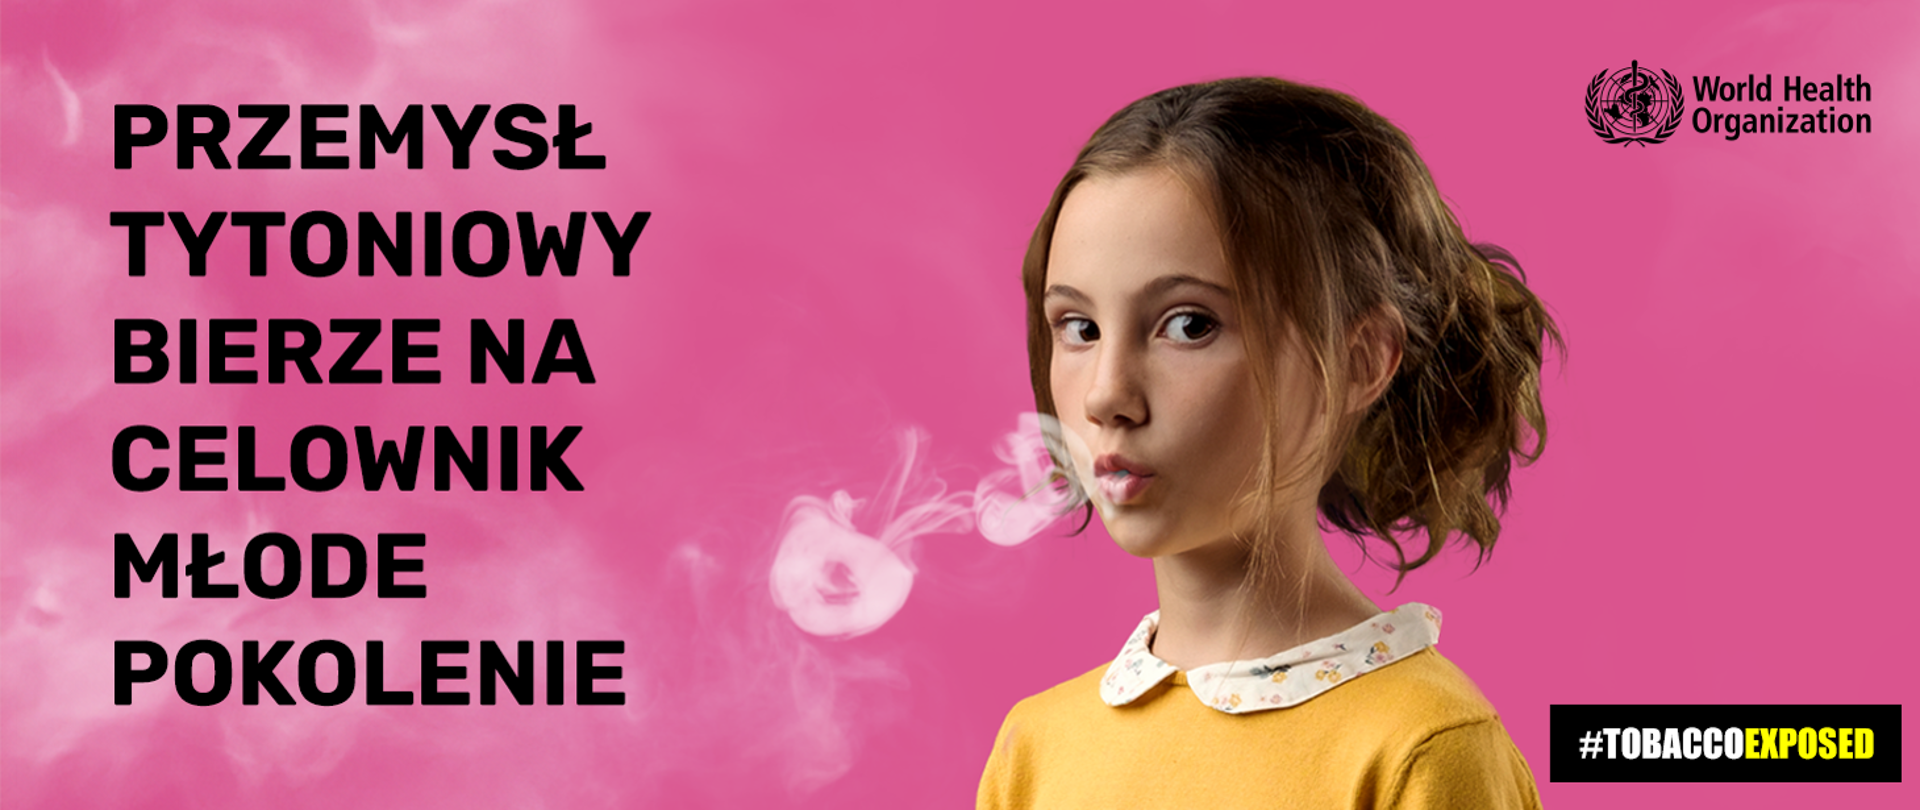 różowe tło, dziewczynka w żółtym sweterku z kołnierzykiem puszcza z ust biały dymek, po lewej stronie napis "przemysł tytoniowy bierze na celownik młode pokolenie"